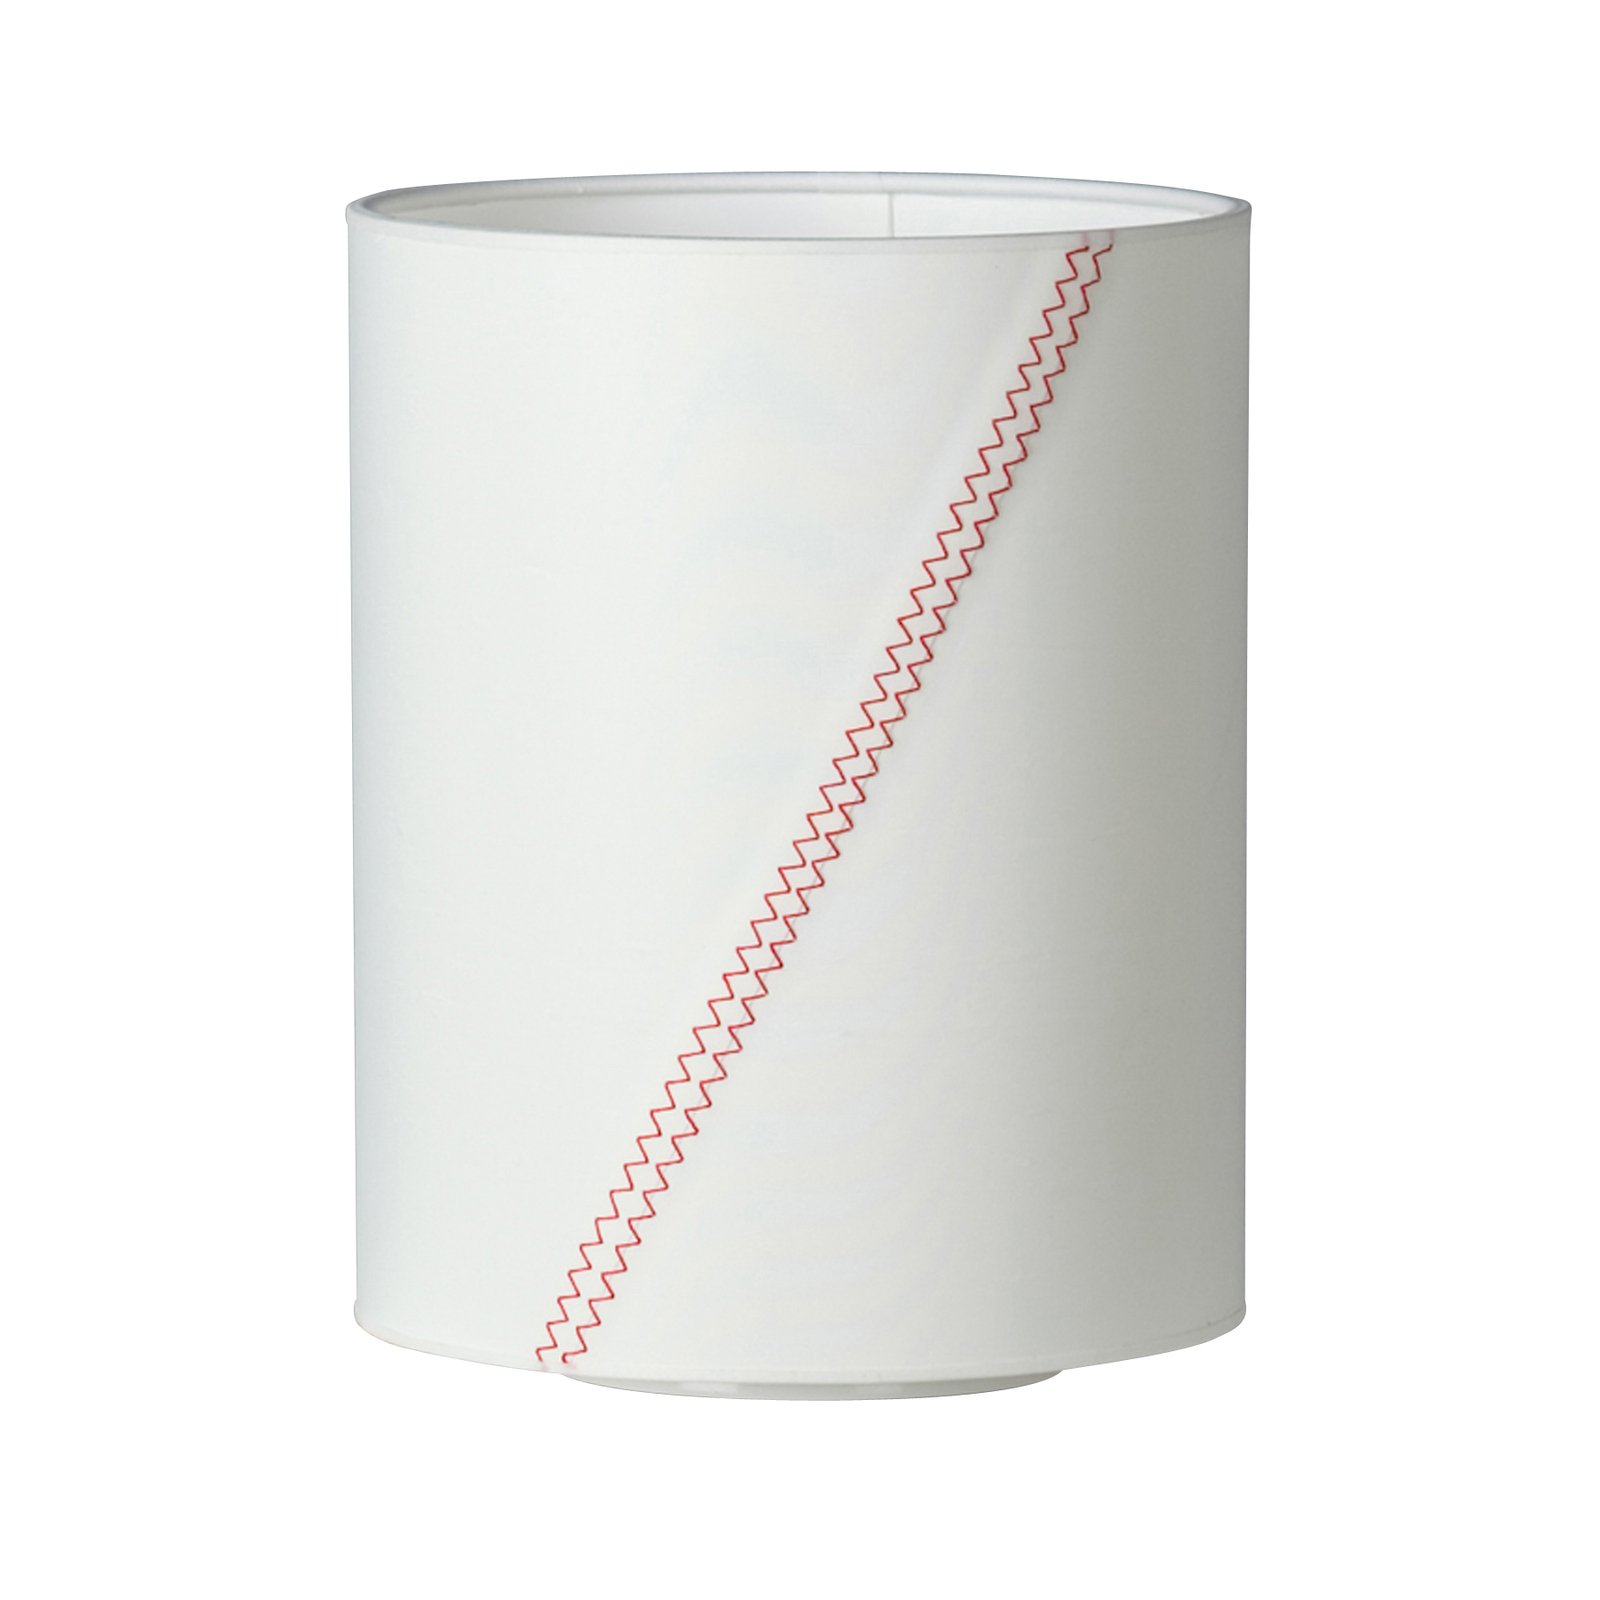 Lampada da tavolo Piroscafo N°17 vela bianco/rosso